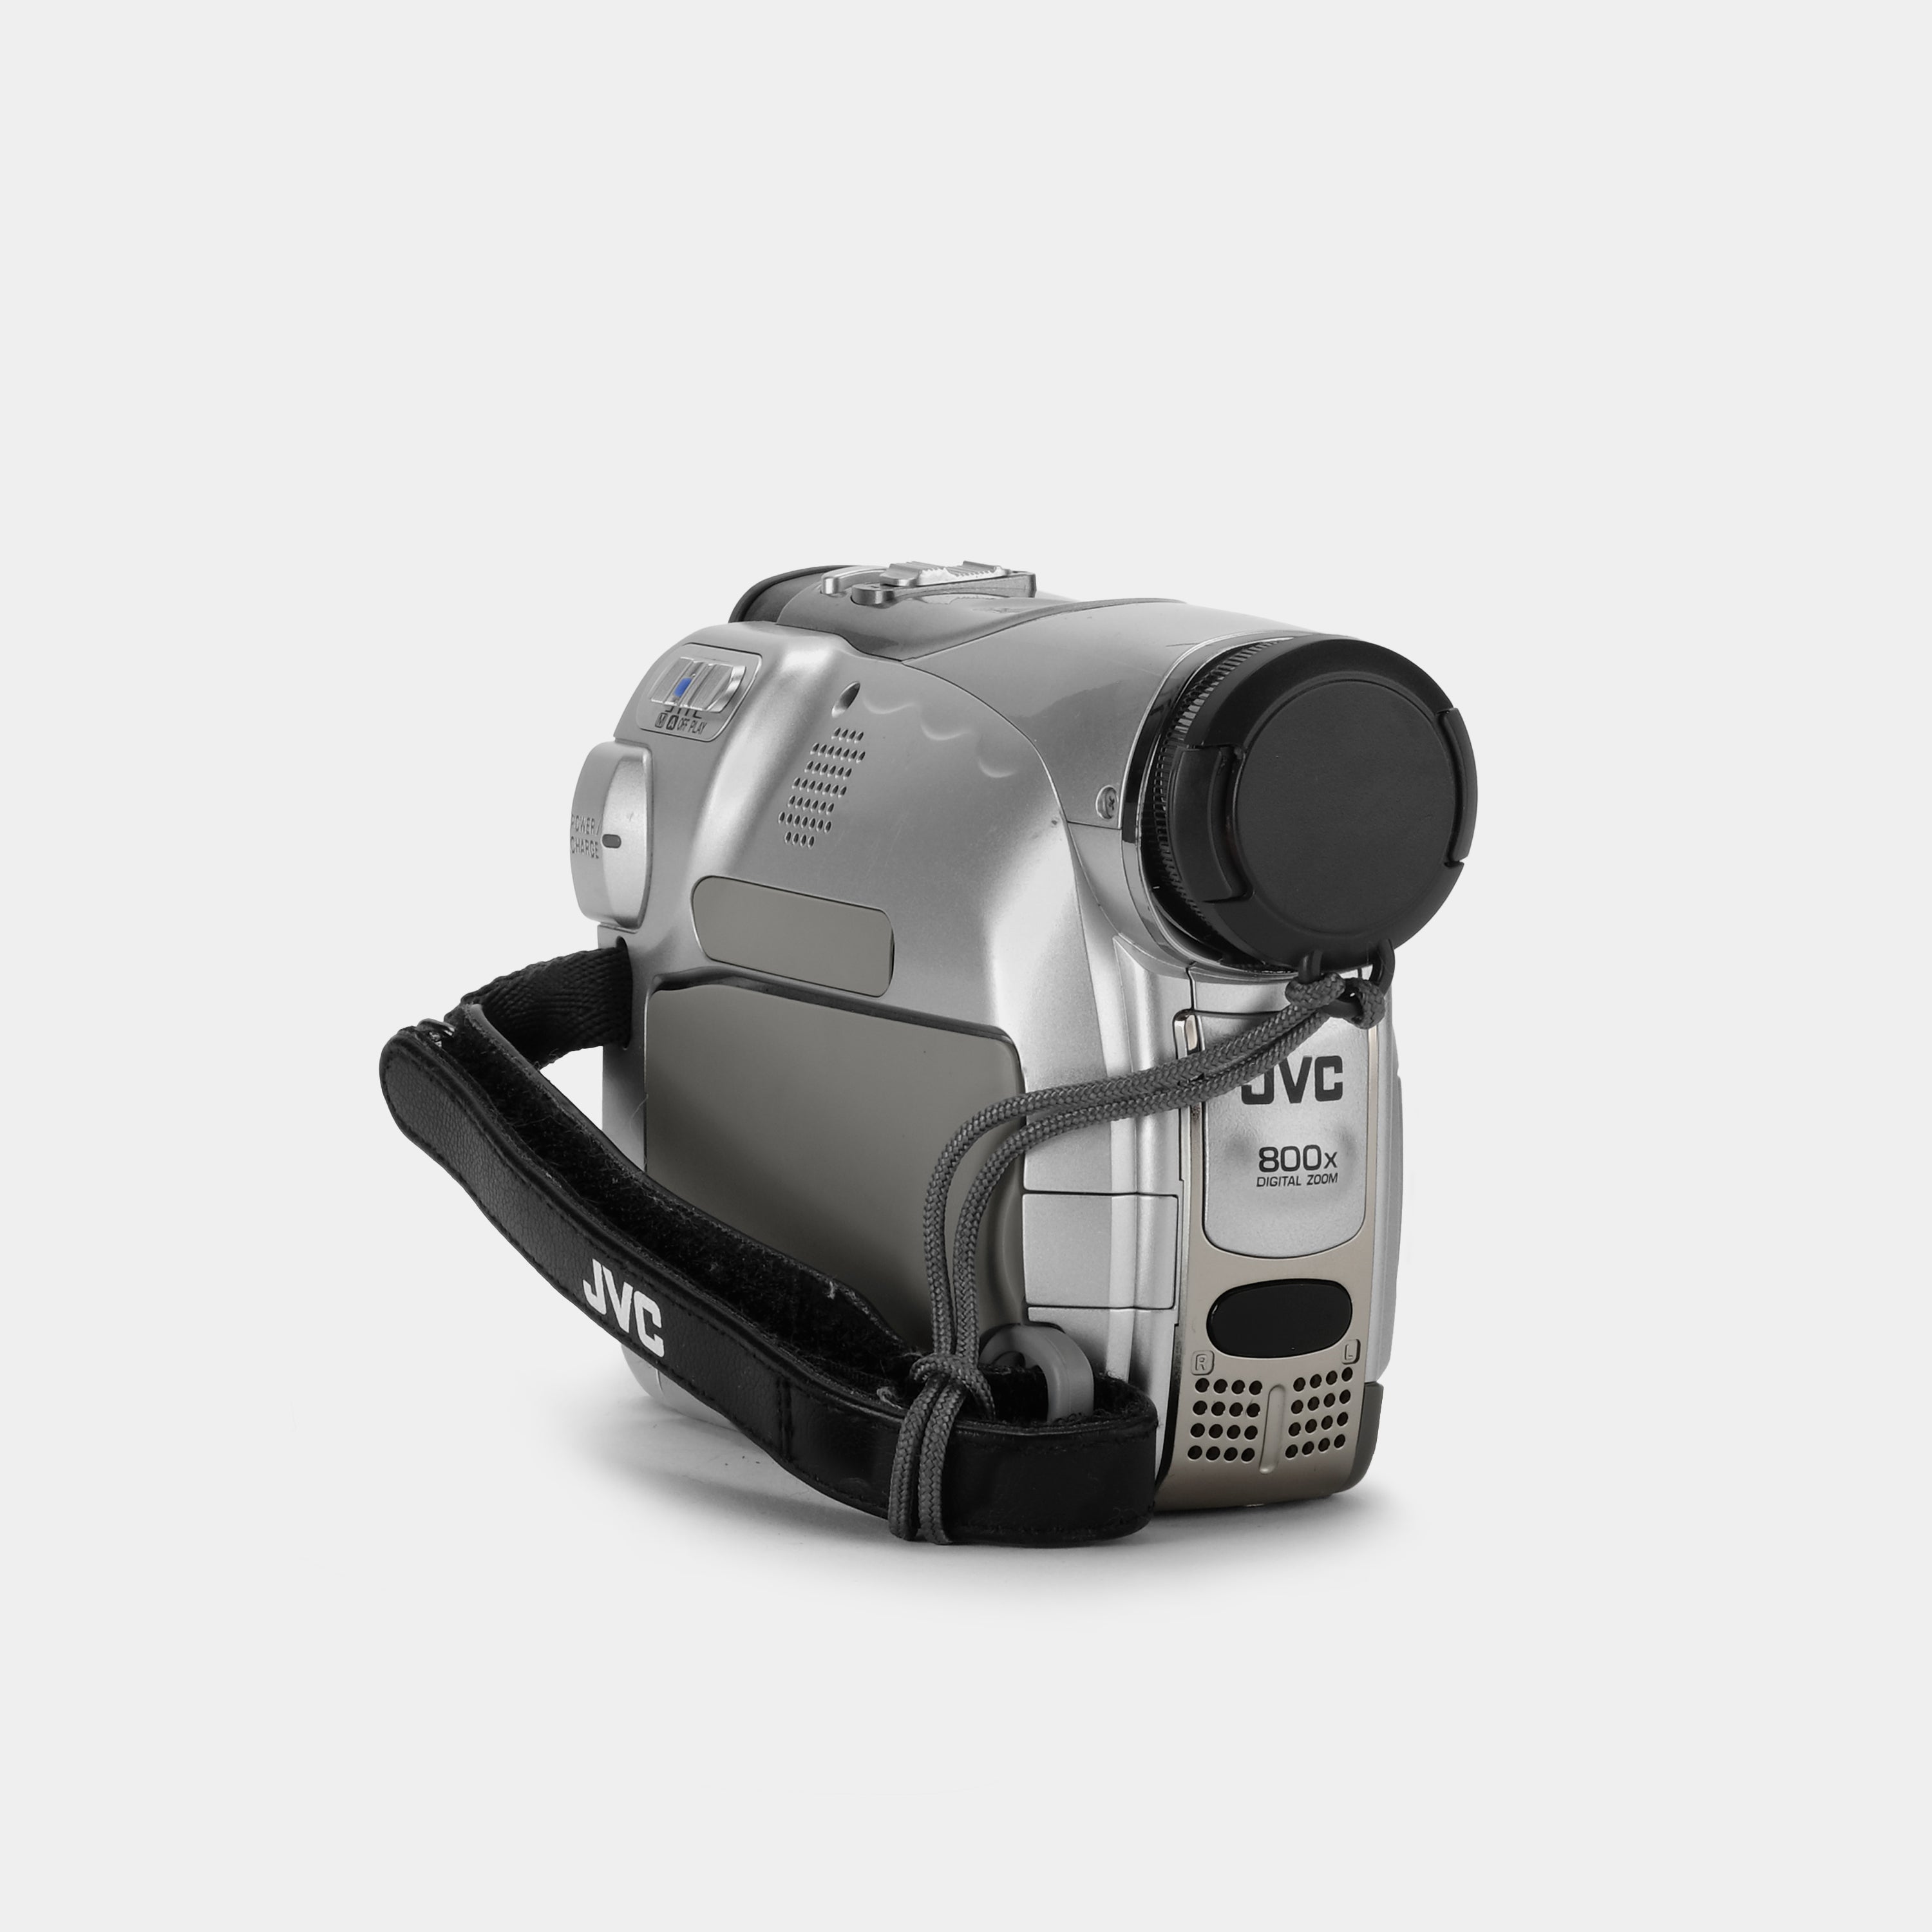 JVC GR-D250 Digital Video Camcorder